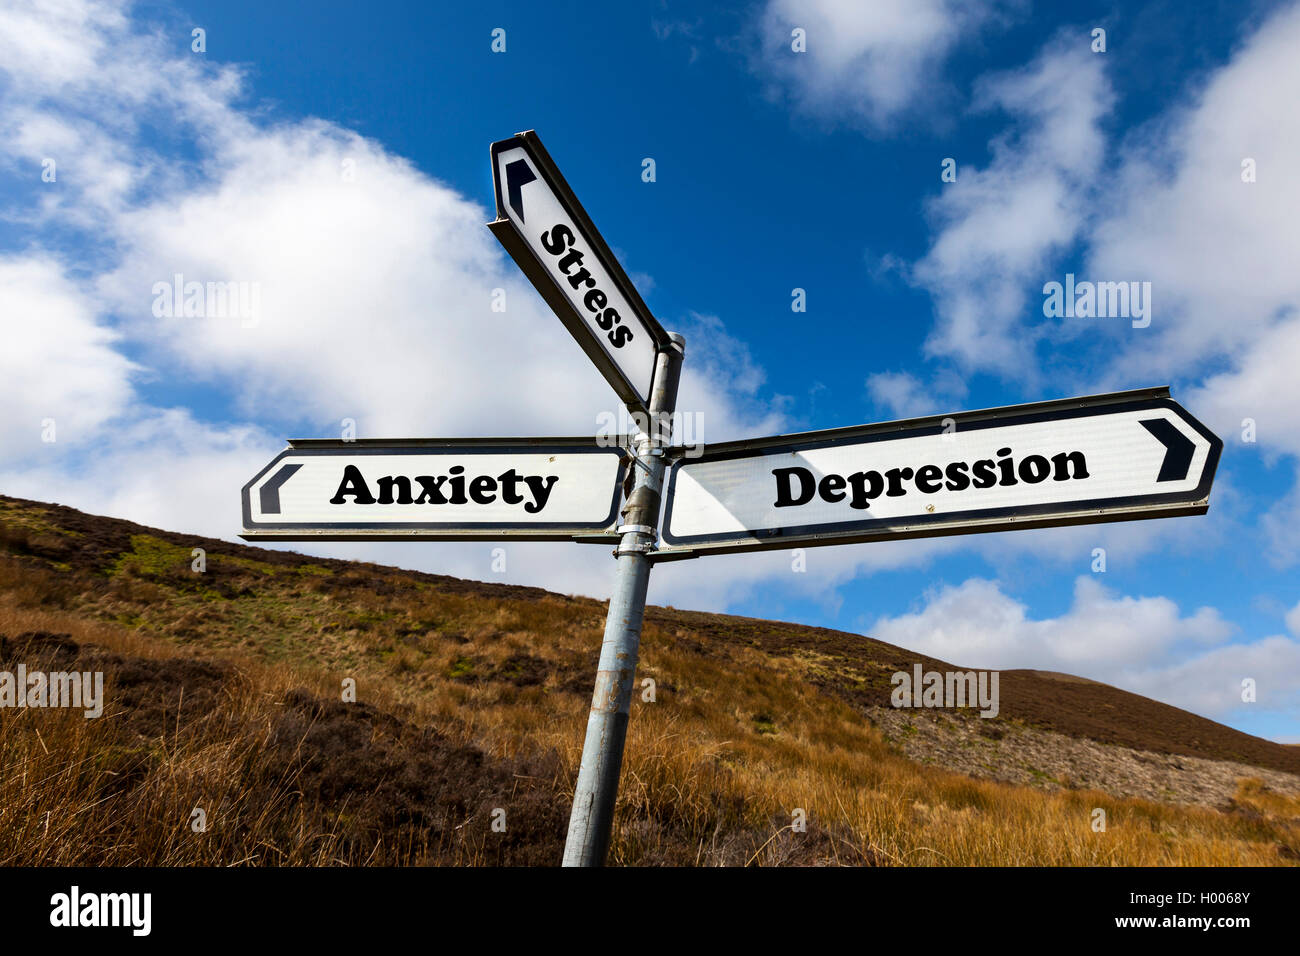 Depressione Stress ansia problema di salute mentale problemi concetto cartello stradale aiuto necessario NHS non riescono a far fronte scelta scegli la vita Foto Stock